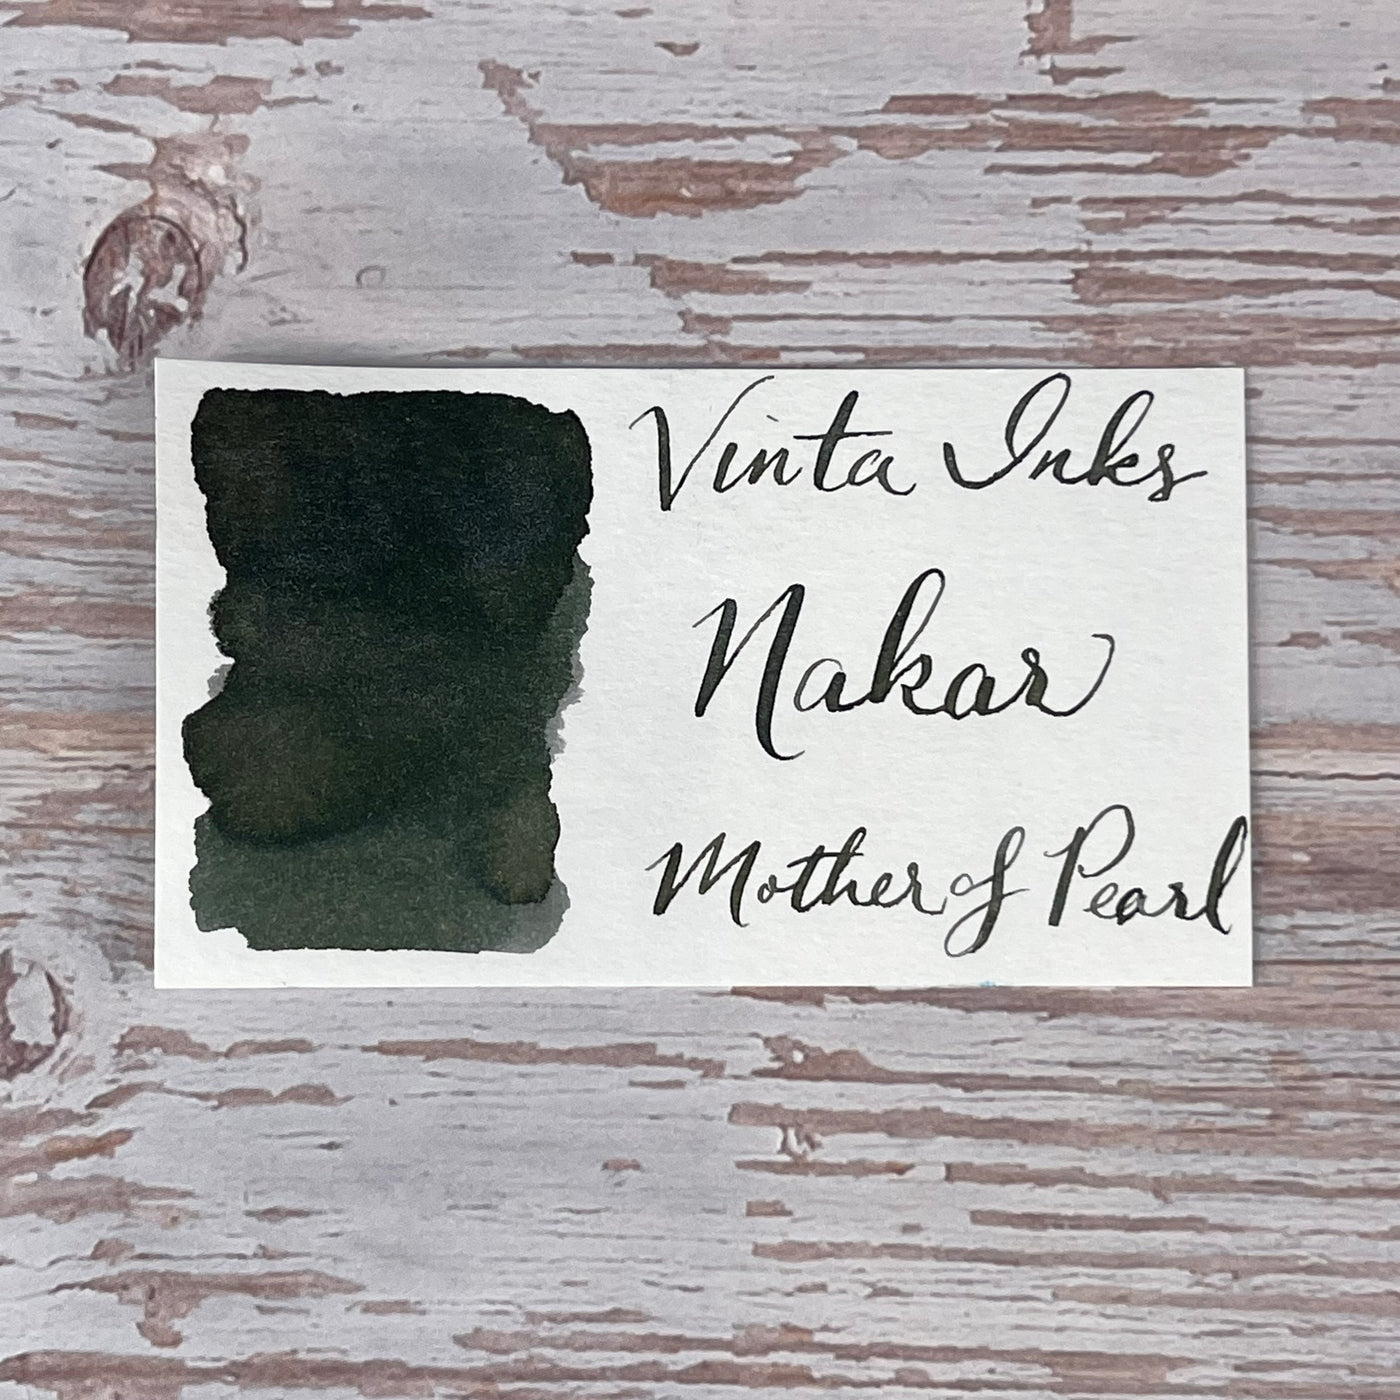 Vinta Mother of Pearl (Nakar 1934) (Shimmer) - 30ml Bottled Ink